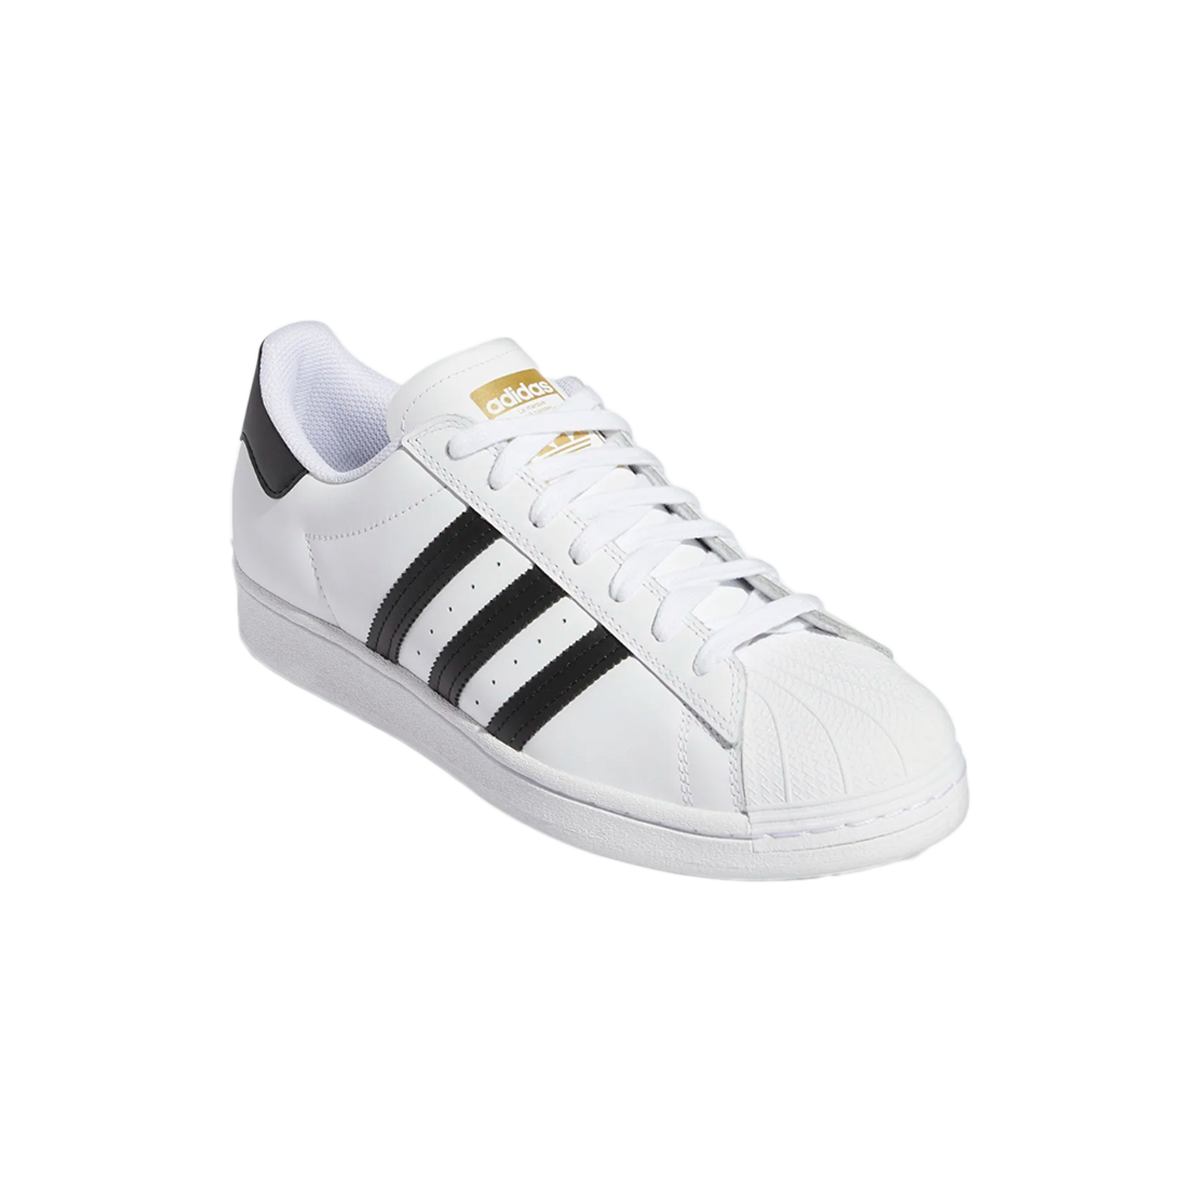 Adidas Leather Shoe White - Directive Boardshop